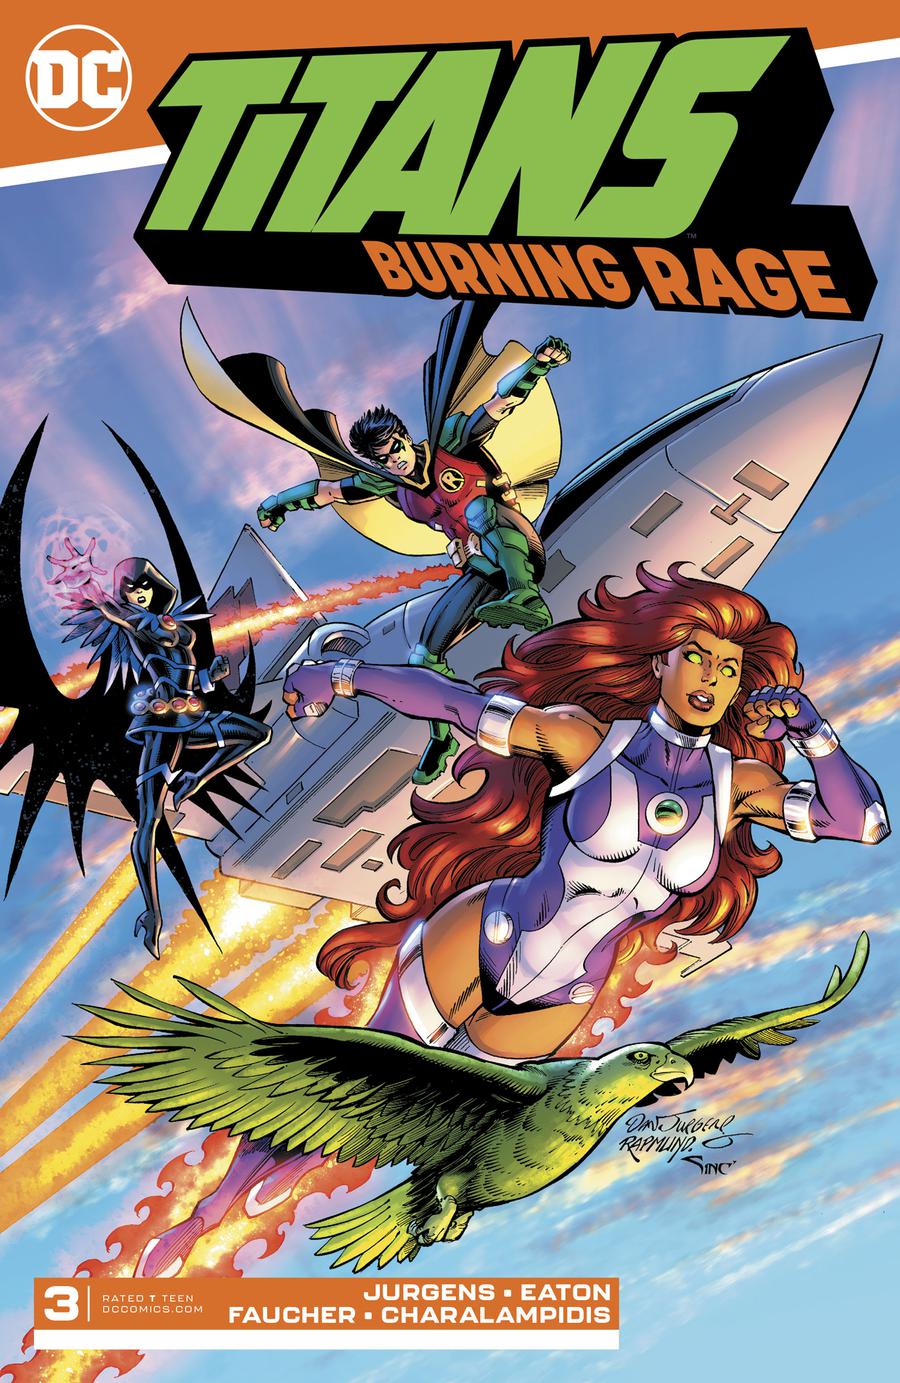 Titans Burning Rage #3